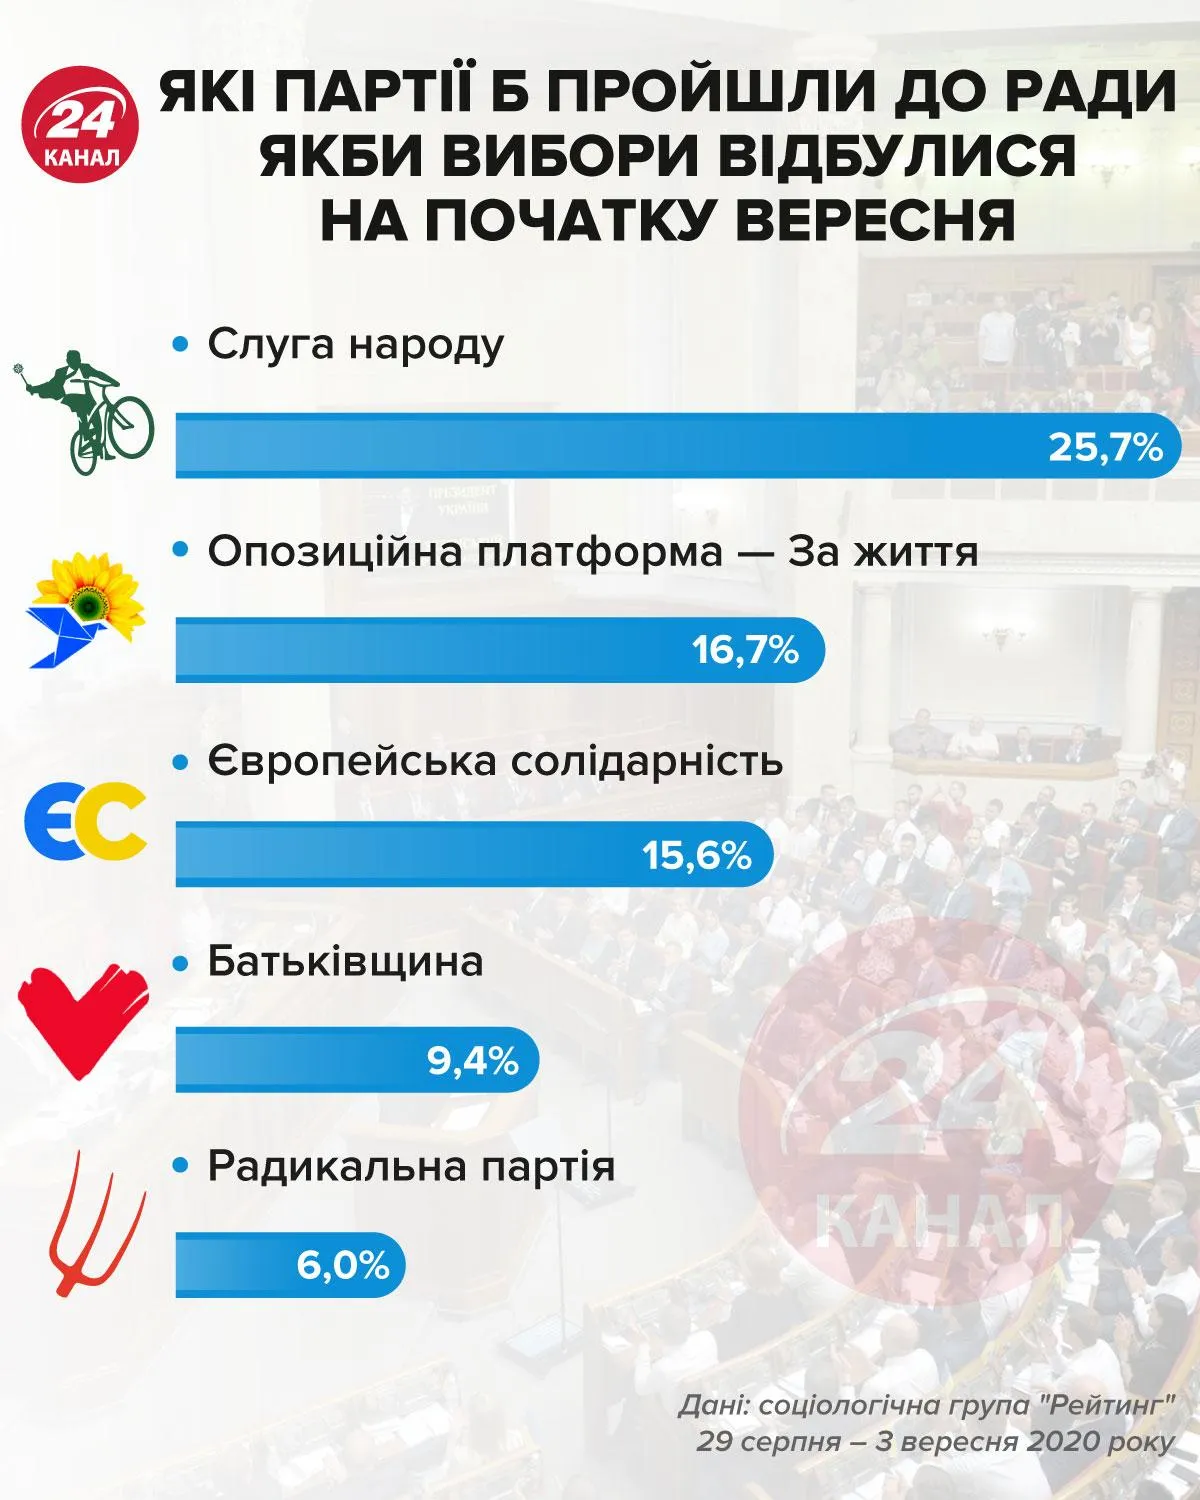 Какие партии прошли б в Раду в сентябре инфографика 24 канал